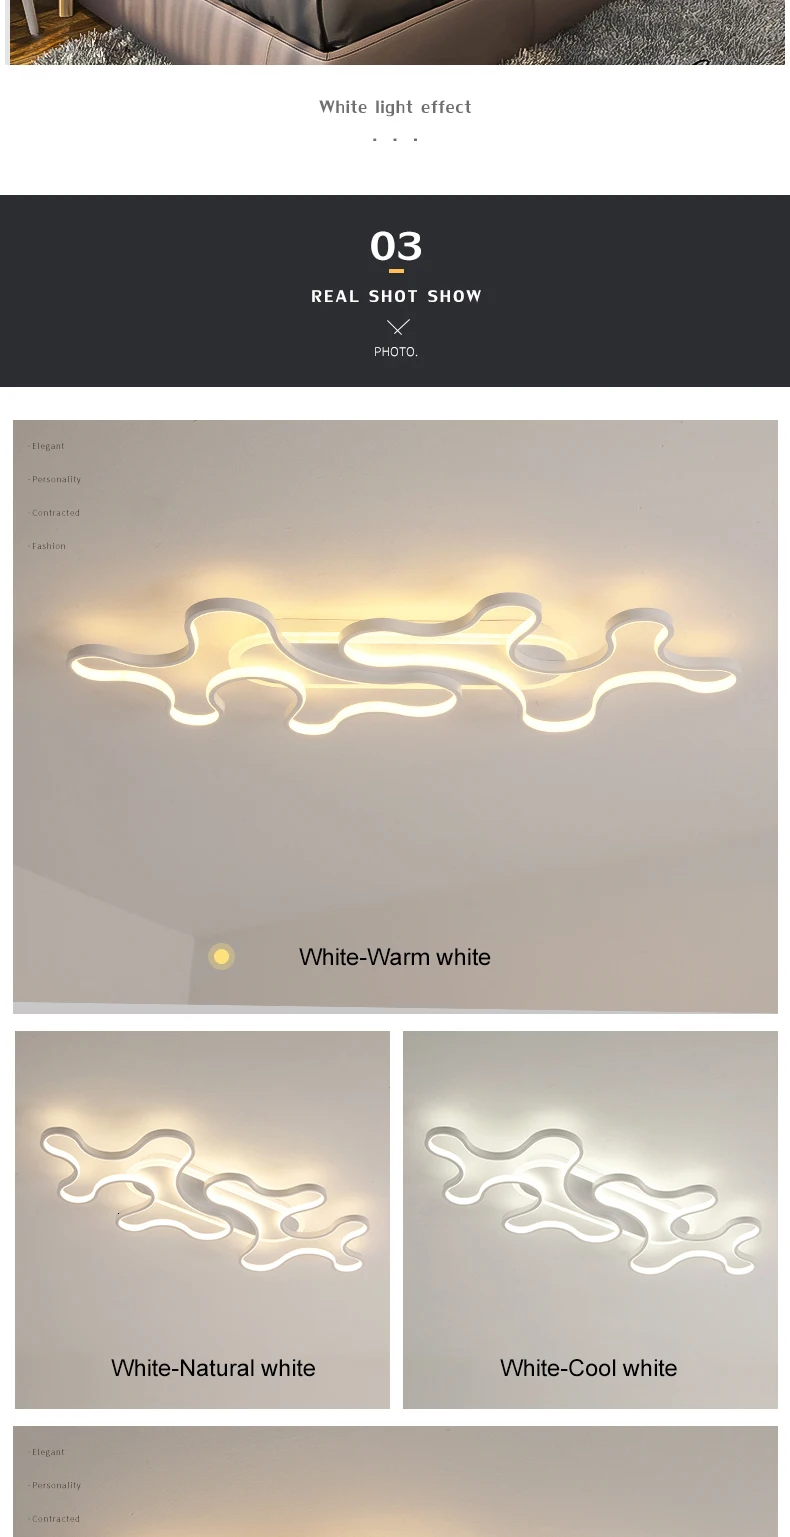 Креативная современная светодиодная потолочная люстра для гостиной, спальни, кабинета, домашнего освещения, белая/черная люстра, светильники AC90-260V